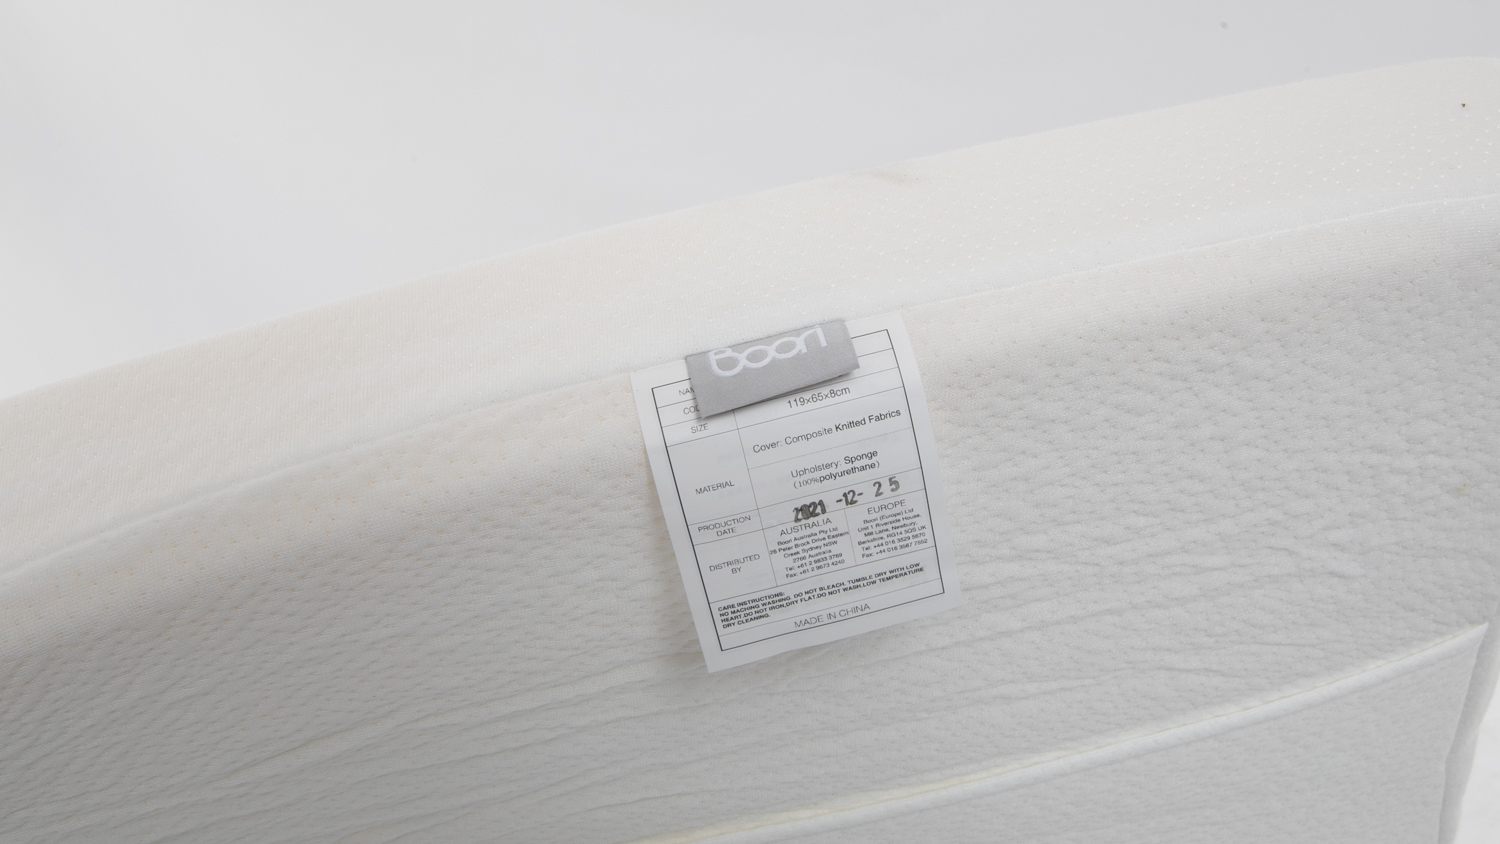 boori breathable mattress price